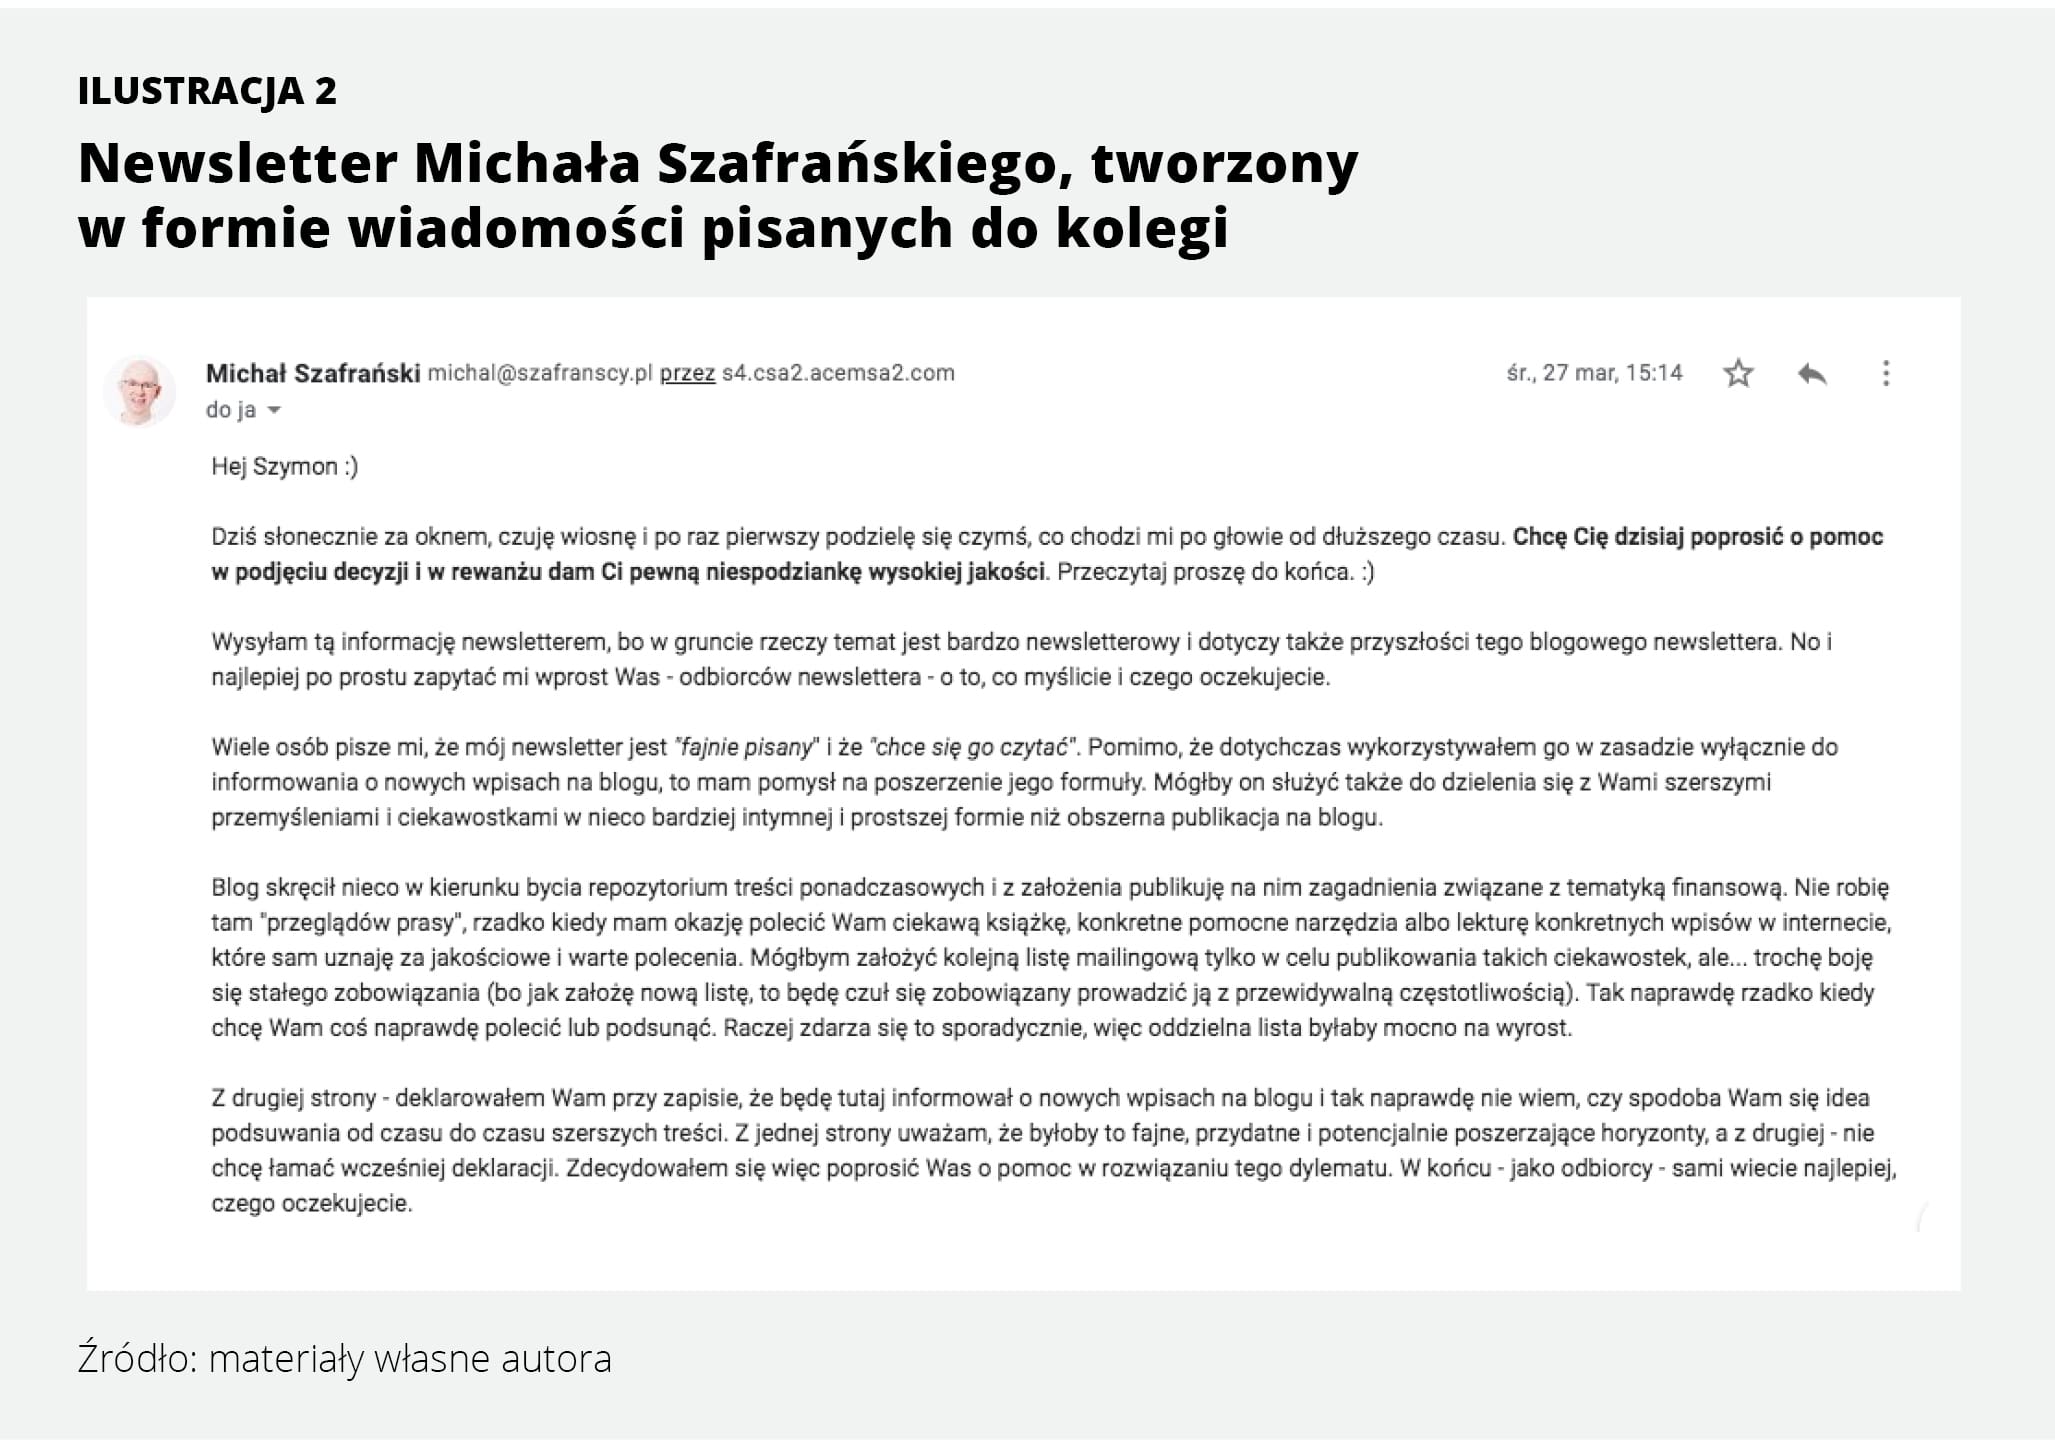 Newsletter Michała Szafrańskiego, tworzony w formie wiadomości pisanych do kolegi